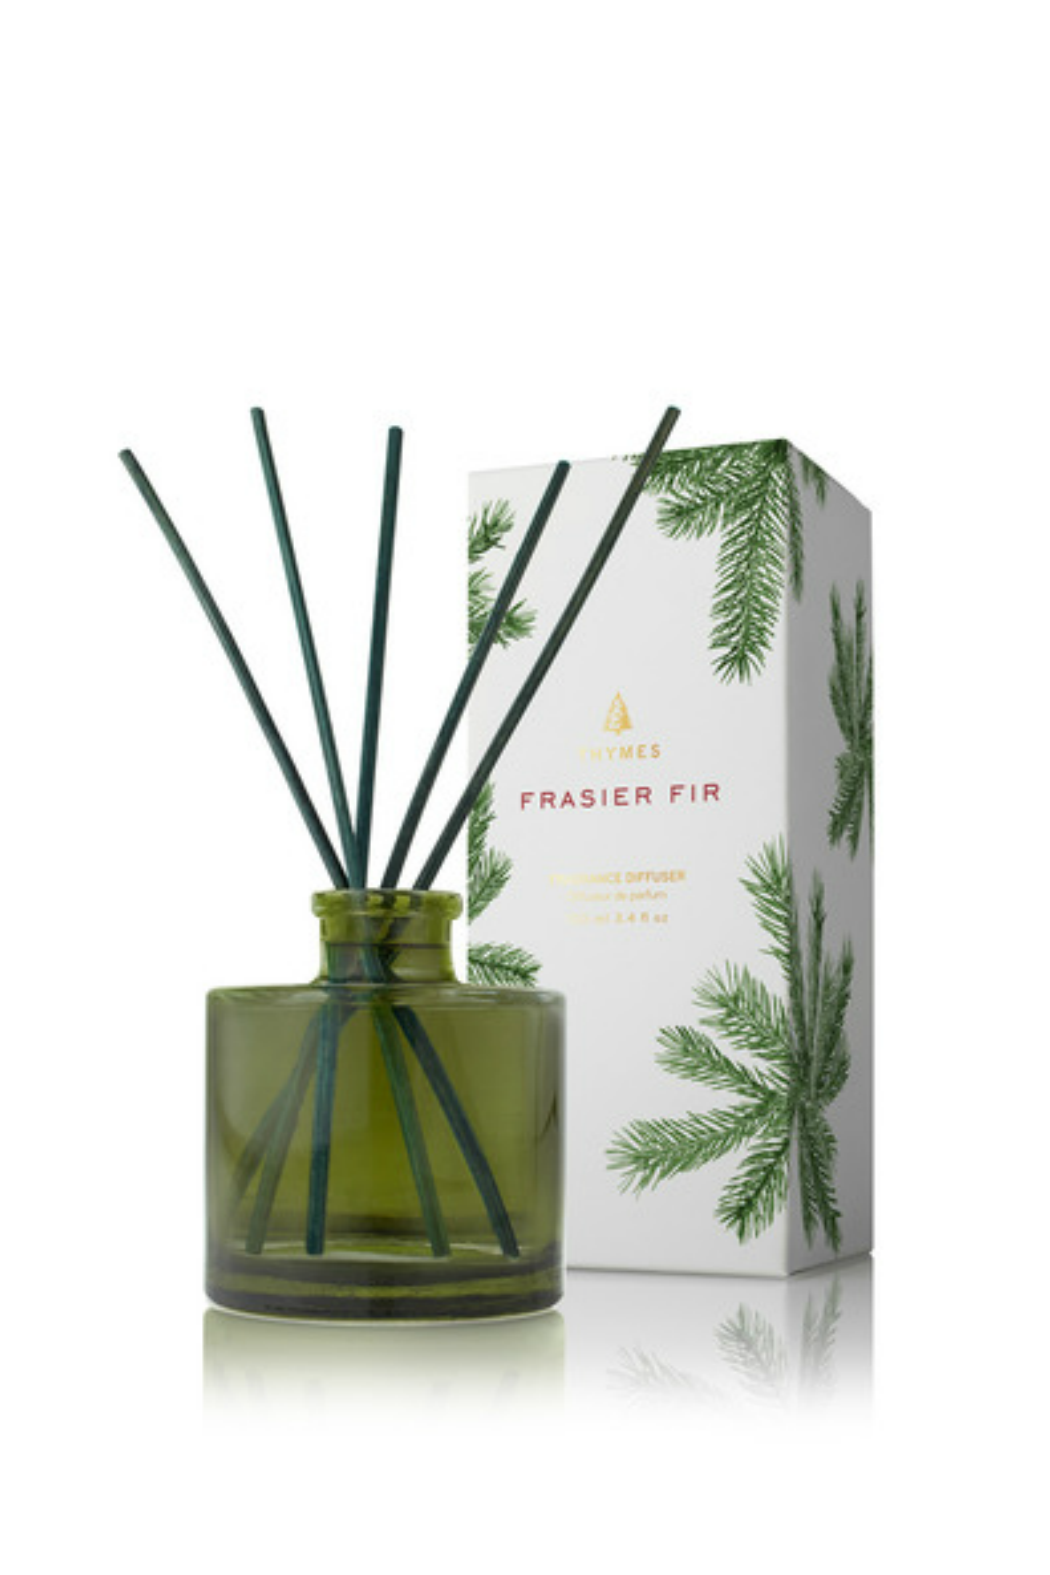 Frasier Fir Fragrance Oil - Thymes Type